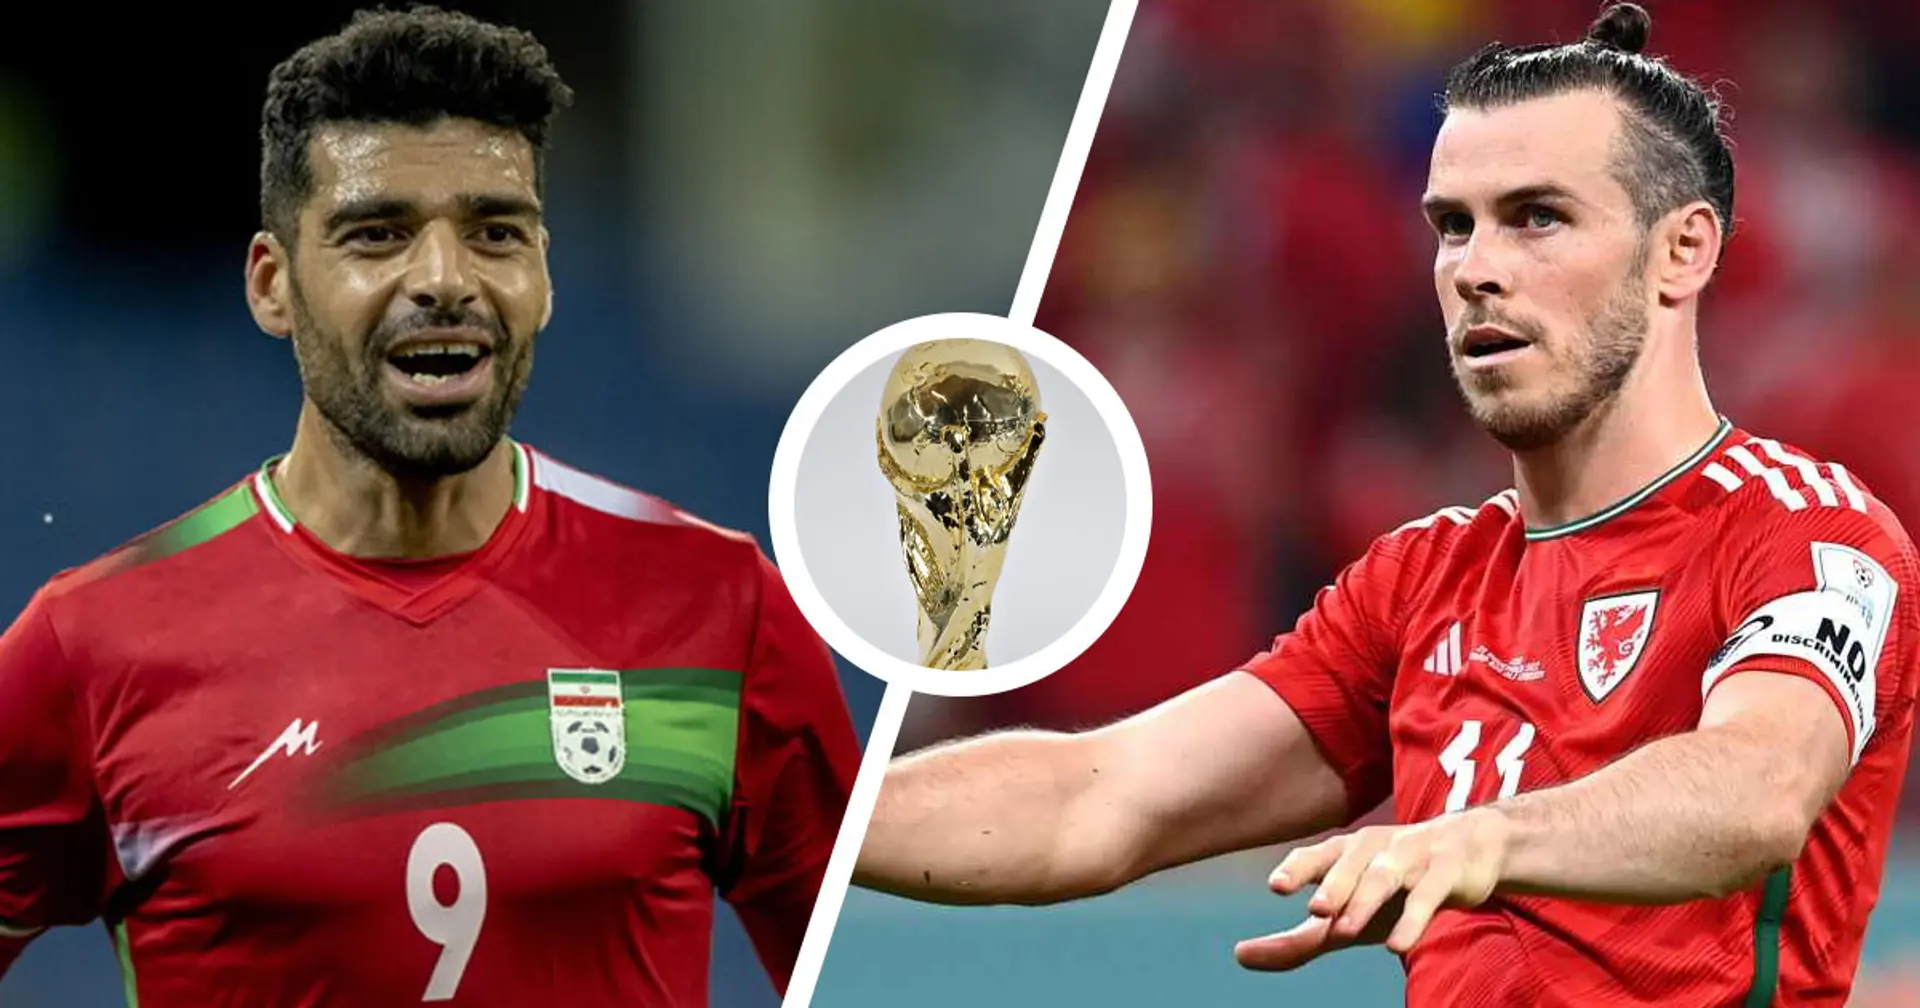 Galles vs Iran: le formazioni ufficiali delle squadre per la partita della Coppa del Mondo Qatar 2022